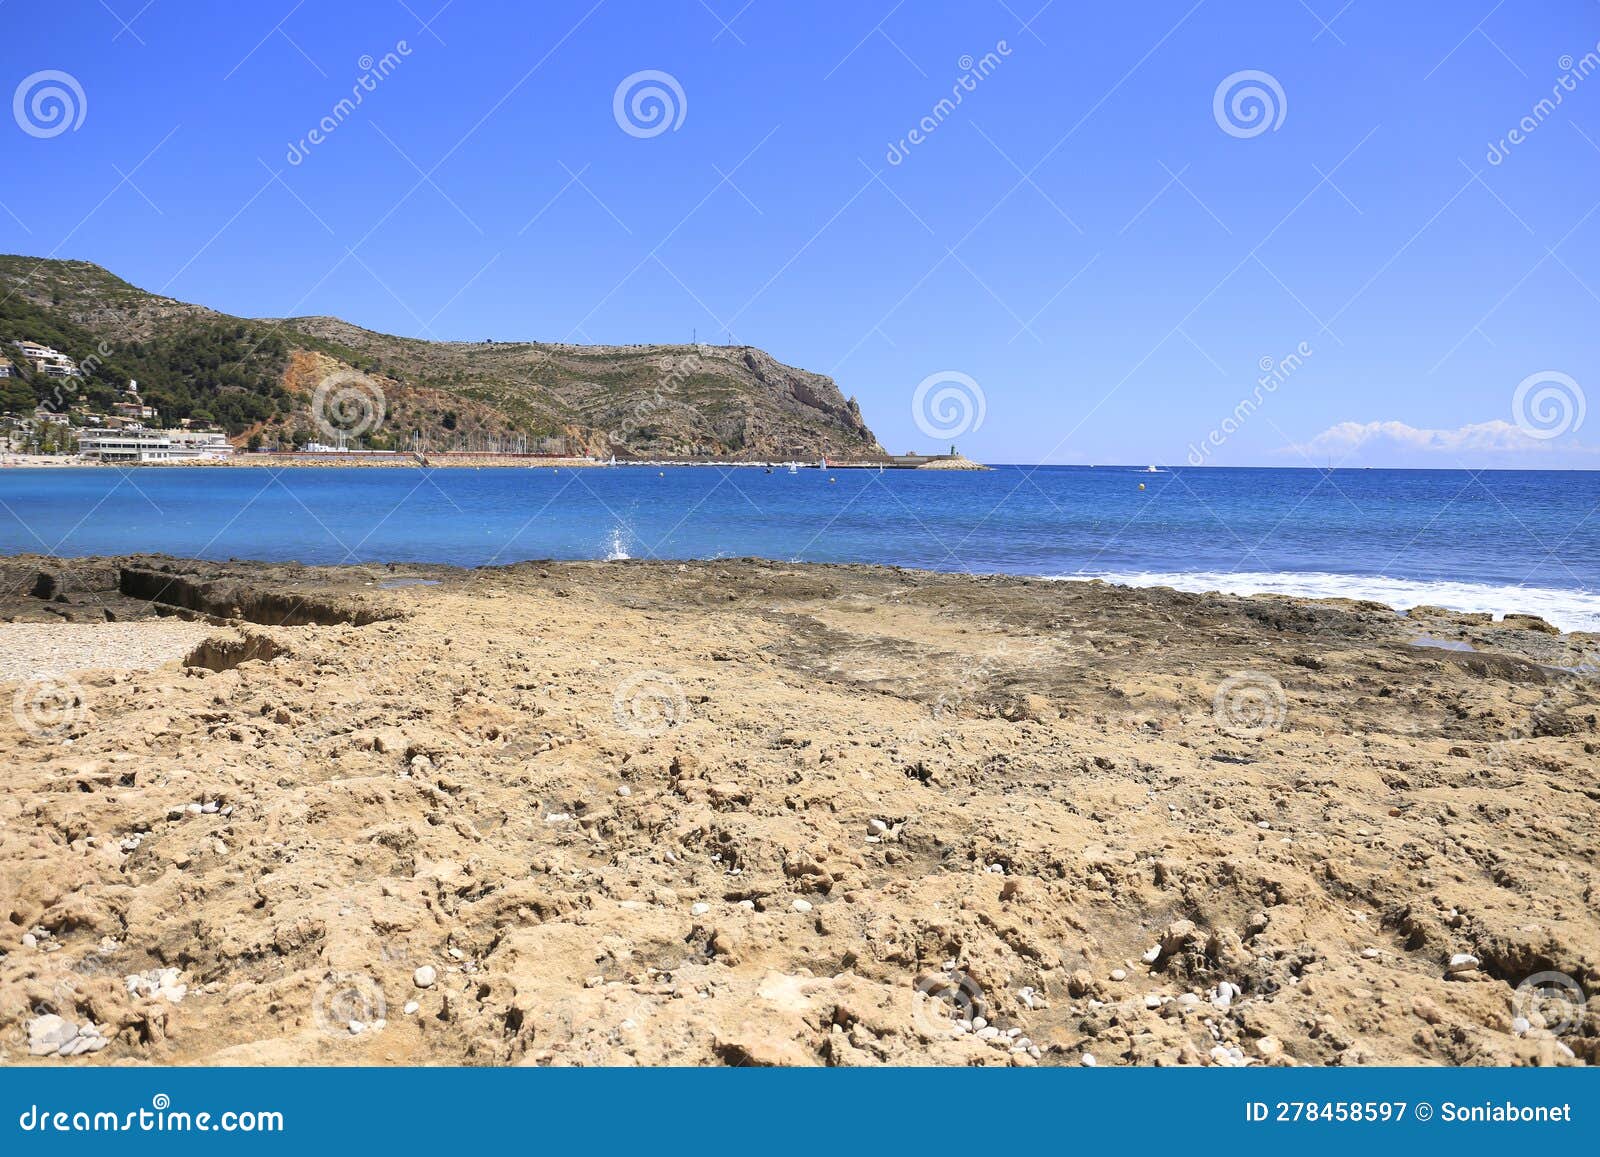 la grava beach on a sunny day